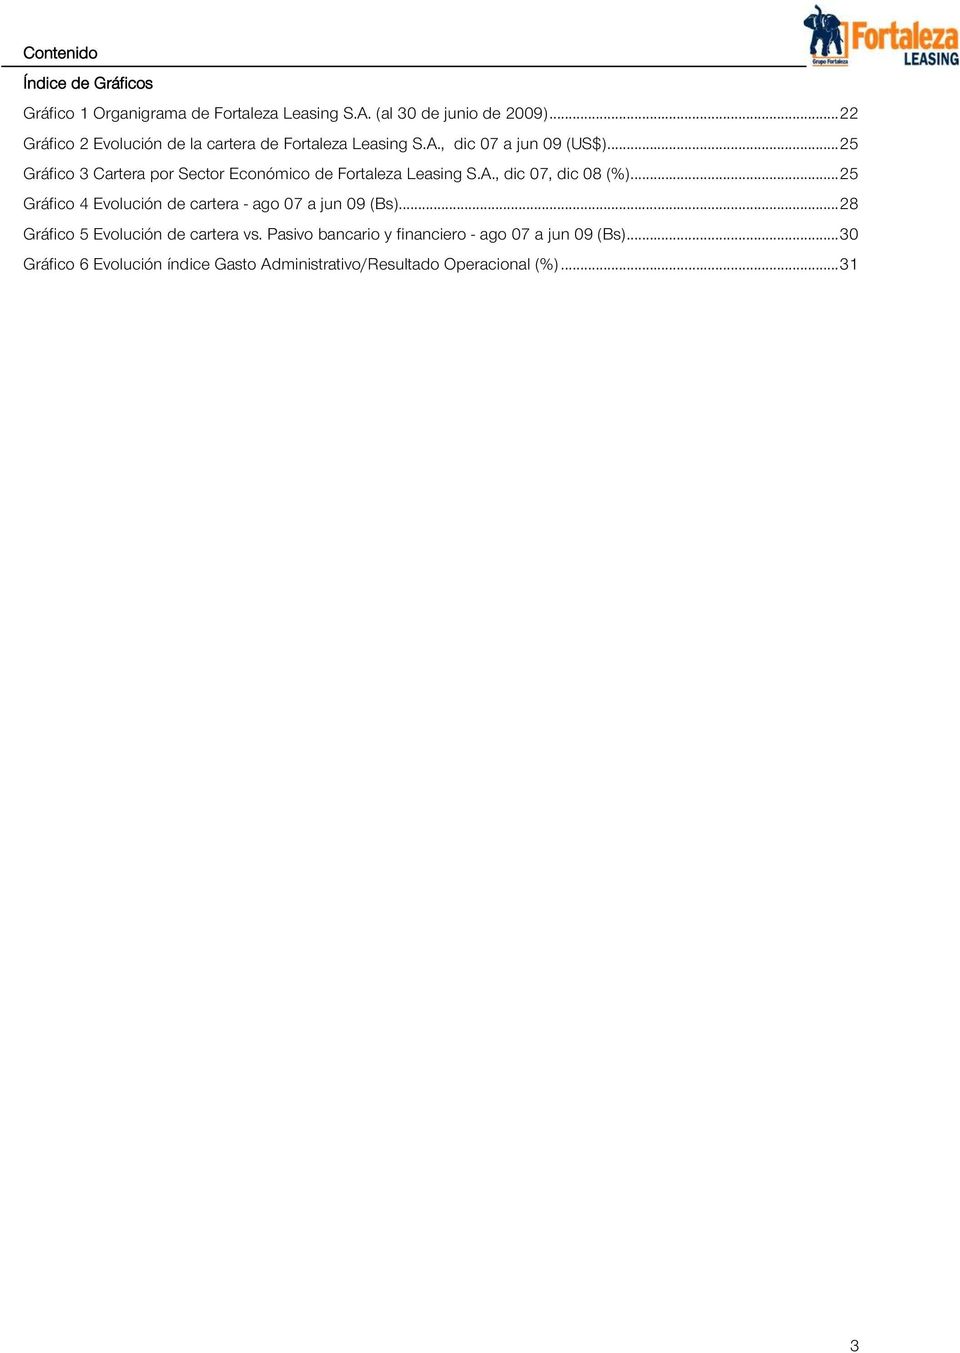 .. 25 Gráfico 3 Cartera por Sector Económico de Fortaleza Leasing S.A., dic 07, dic 08 (%).